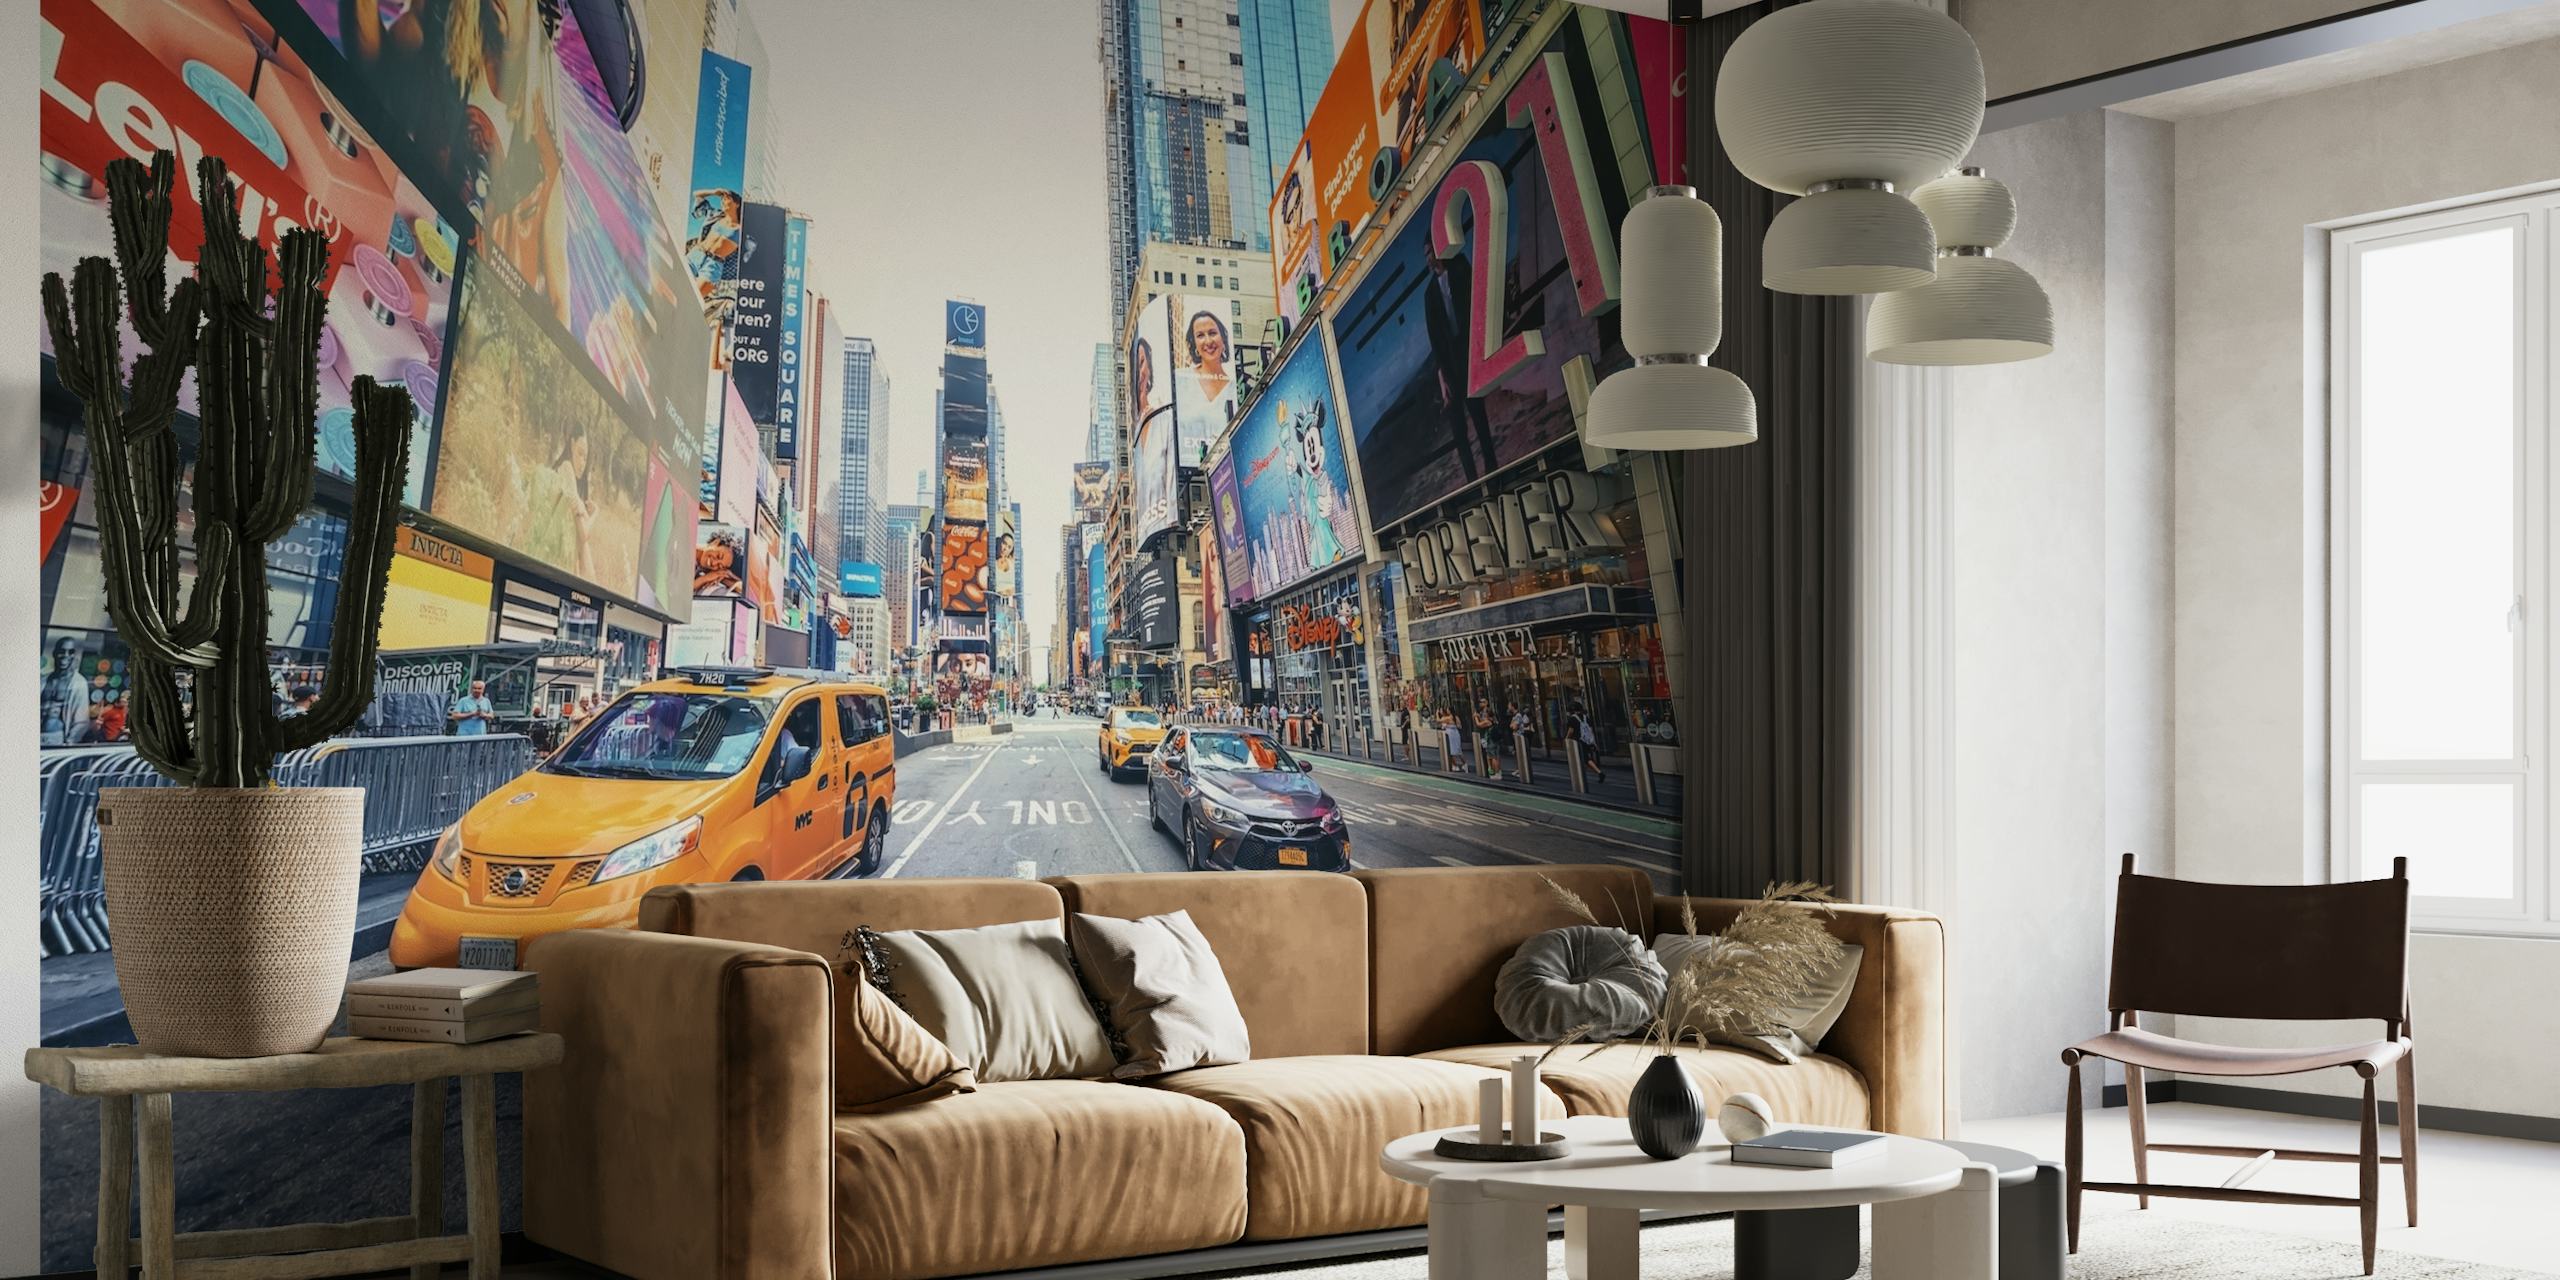 Zidni mural na Times Squareu koji prikazuje užurbani gradski život s taksijima i reklamnim panoima.